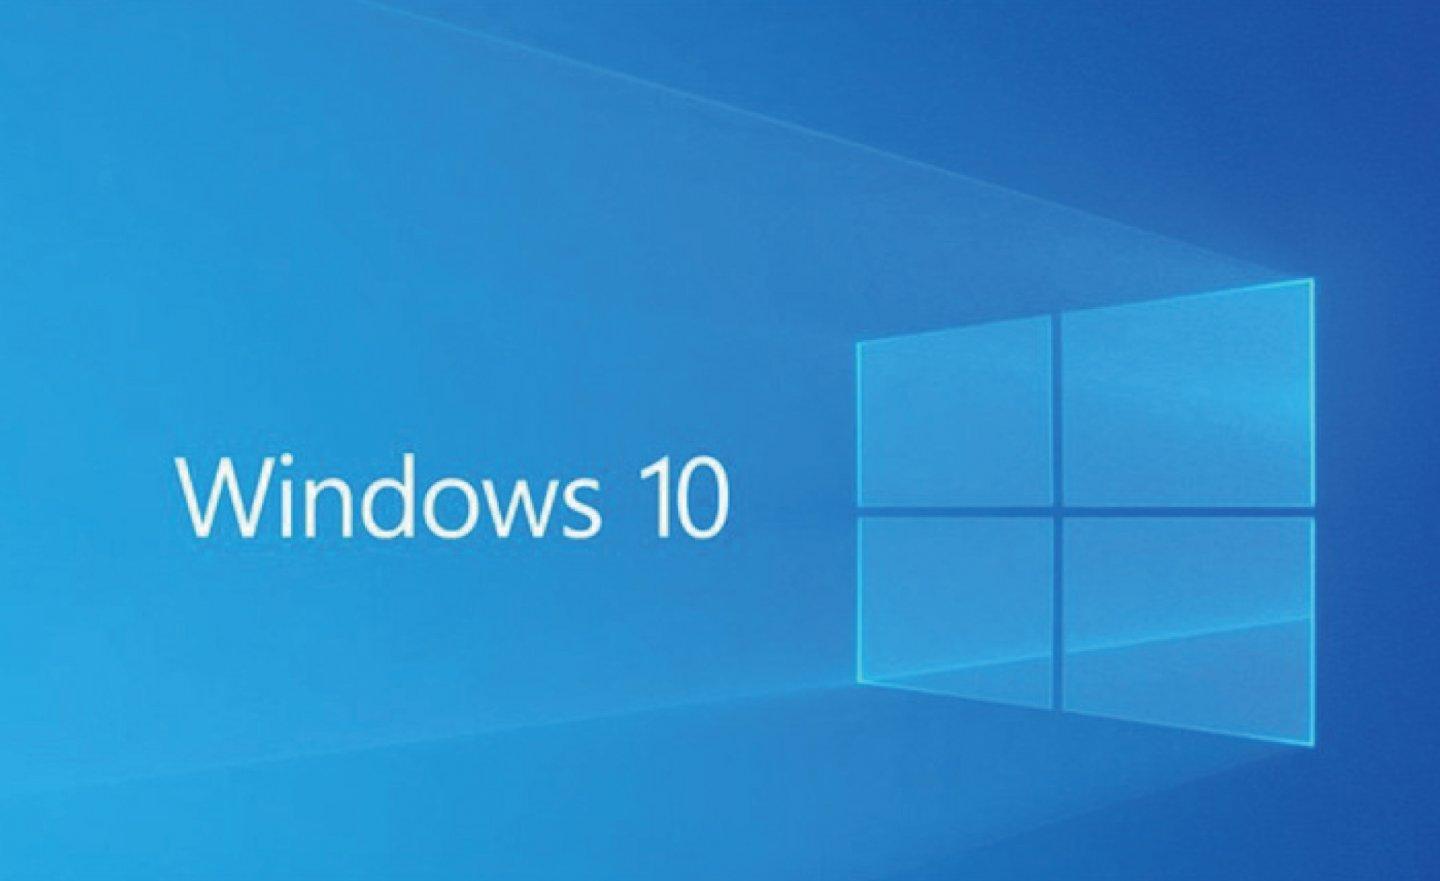 微軟將於 1/31 停止銷售 Windows 10 家用版、專業版和工作站版的序號